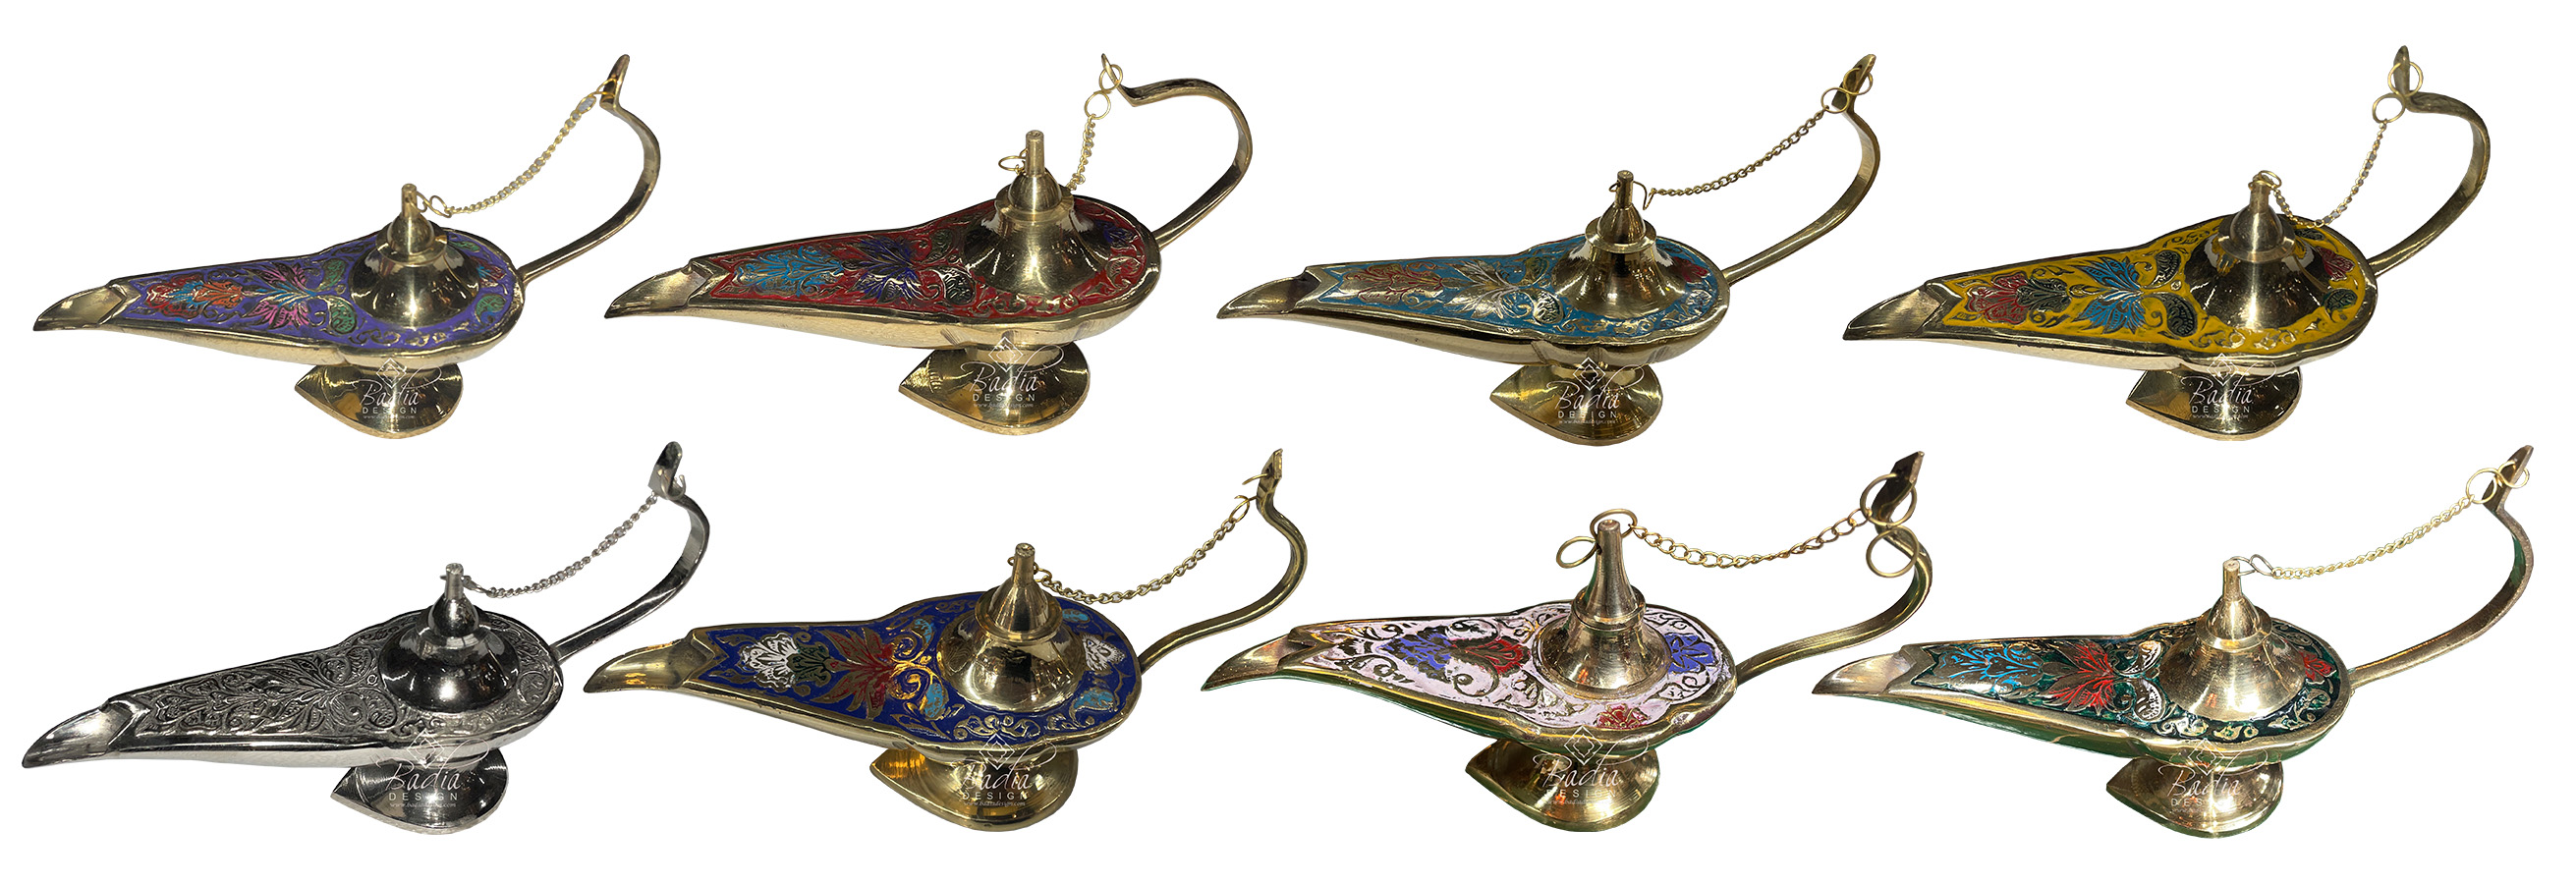 moroccan-brass-genie-lamps-hd270.jpg